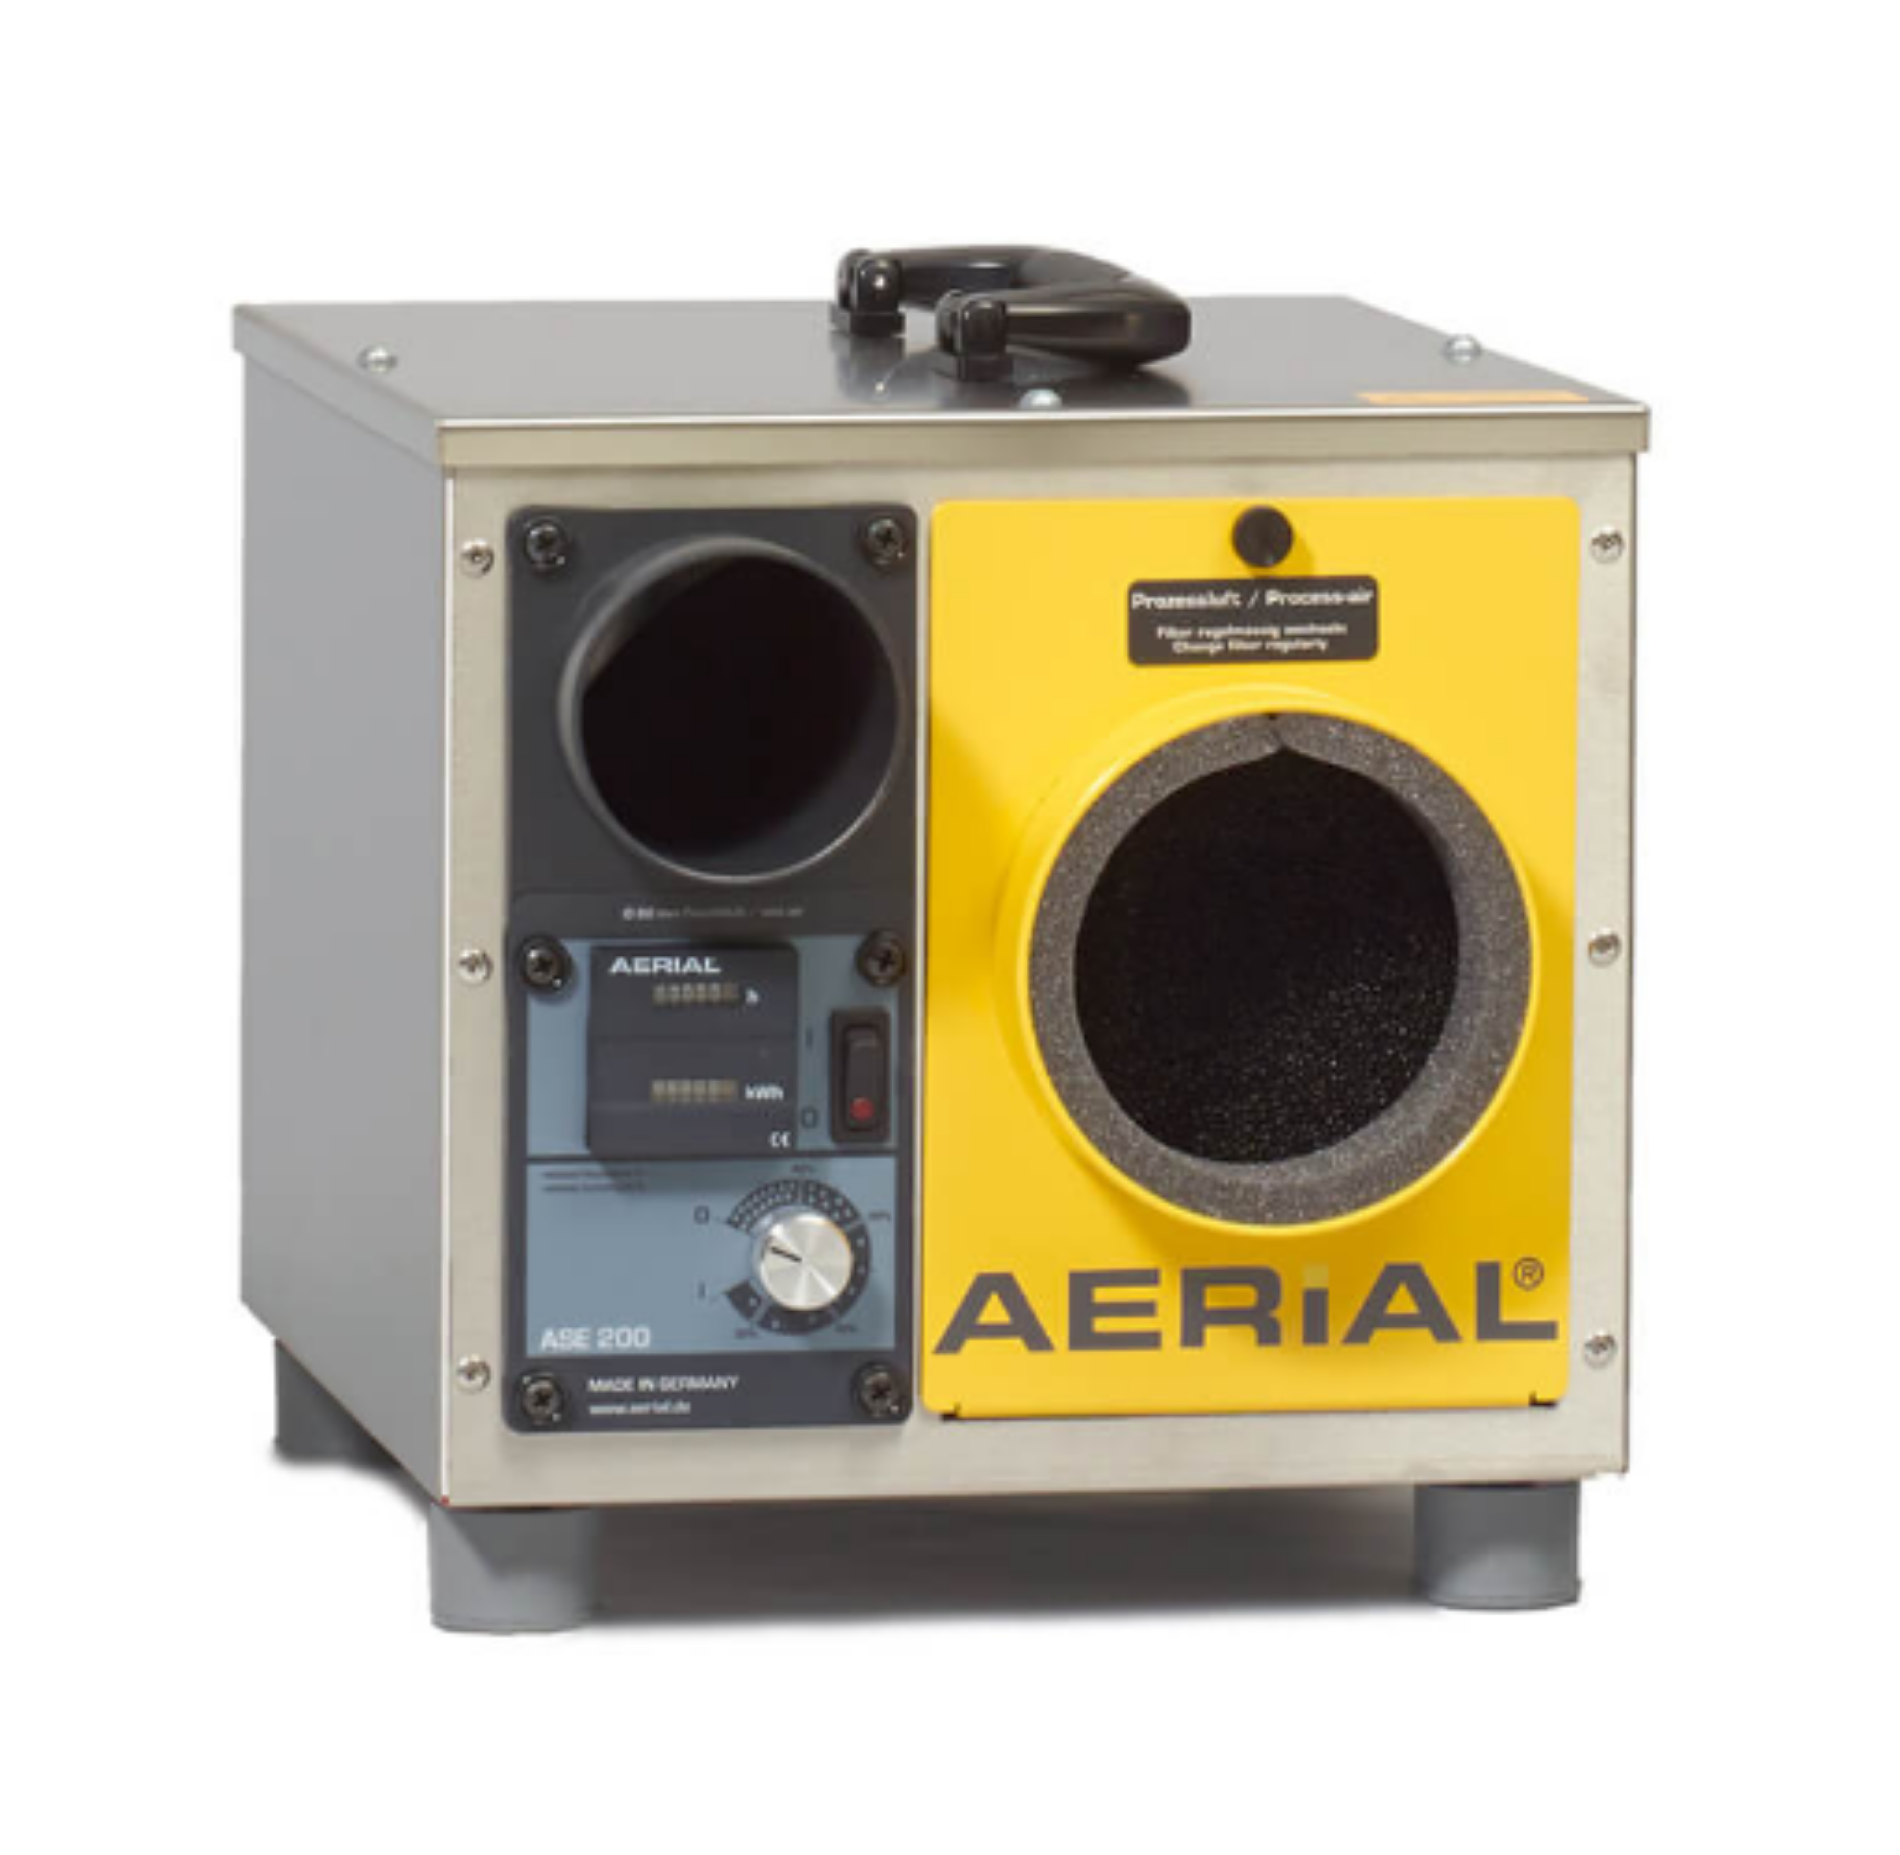  Aerial-ASE-200